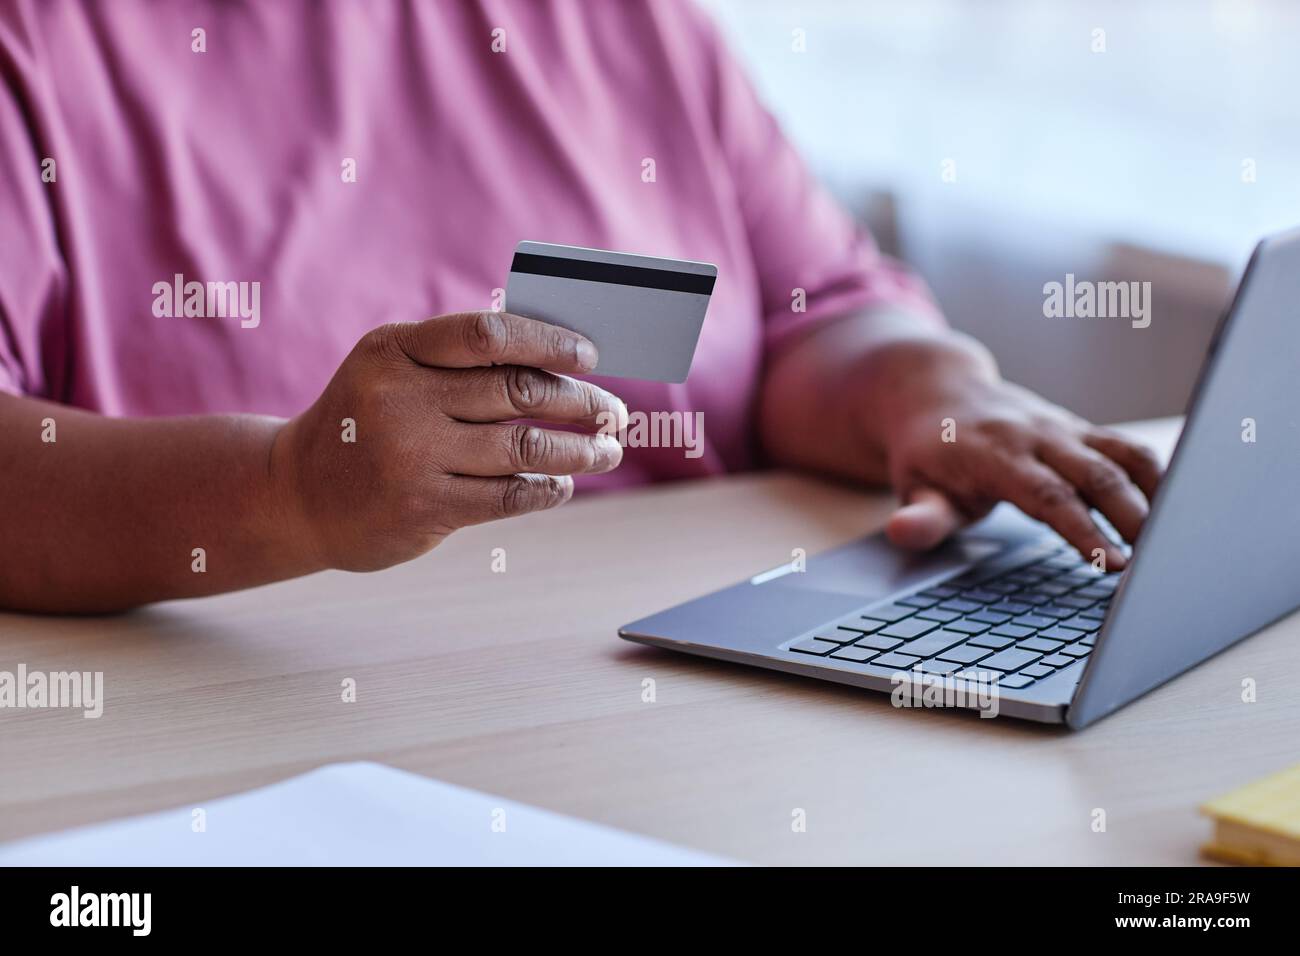 Konzentrieren Sie sich auf die Hand einer älteren Frau mit Kreditkarte, die am Schreibtisch sitzt und ein Notebook verwendet, während sie im Online-Shop Dinge bestellt und bezahlt Stockfoto